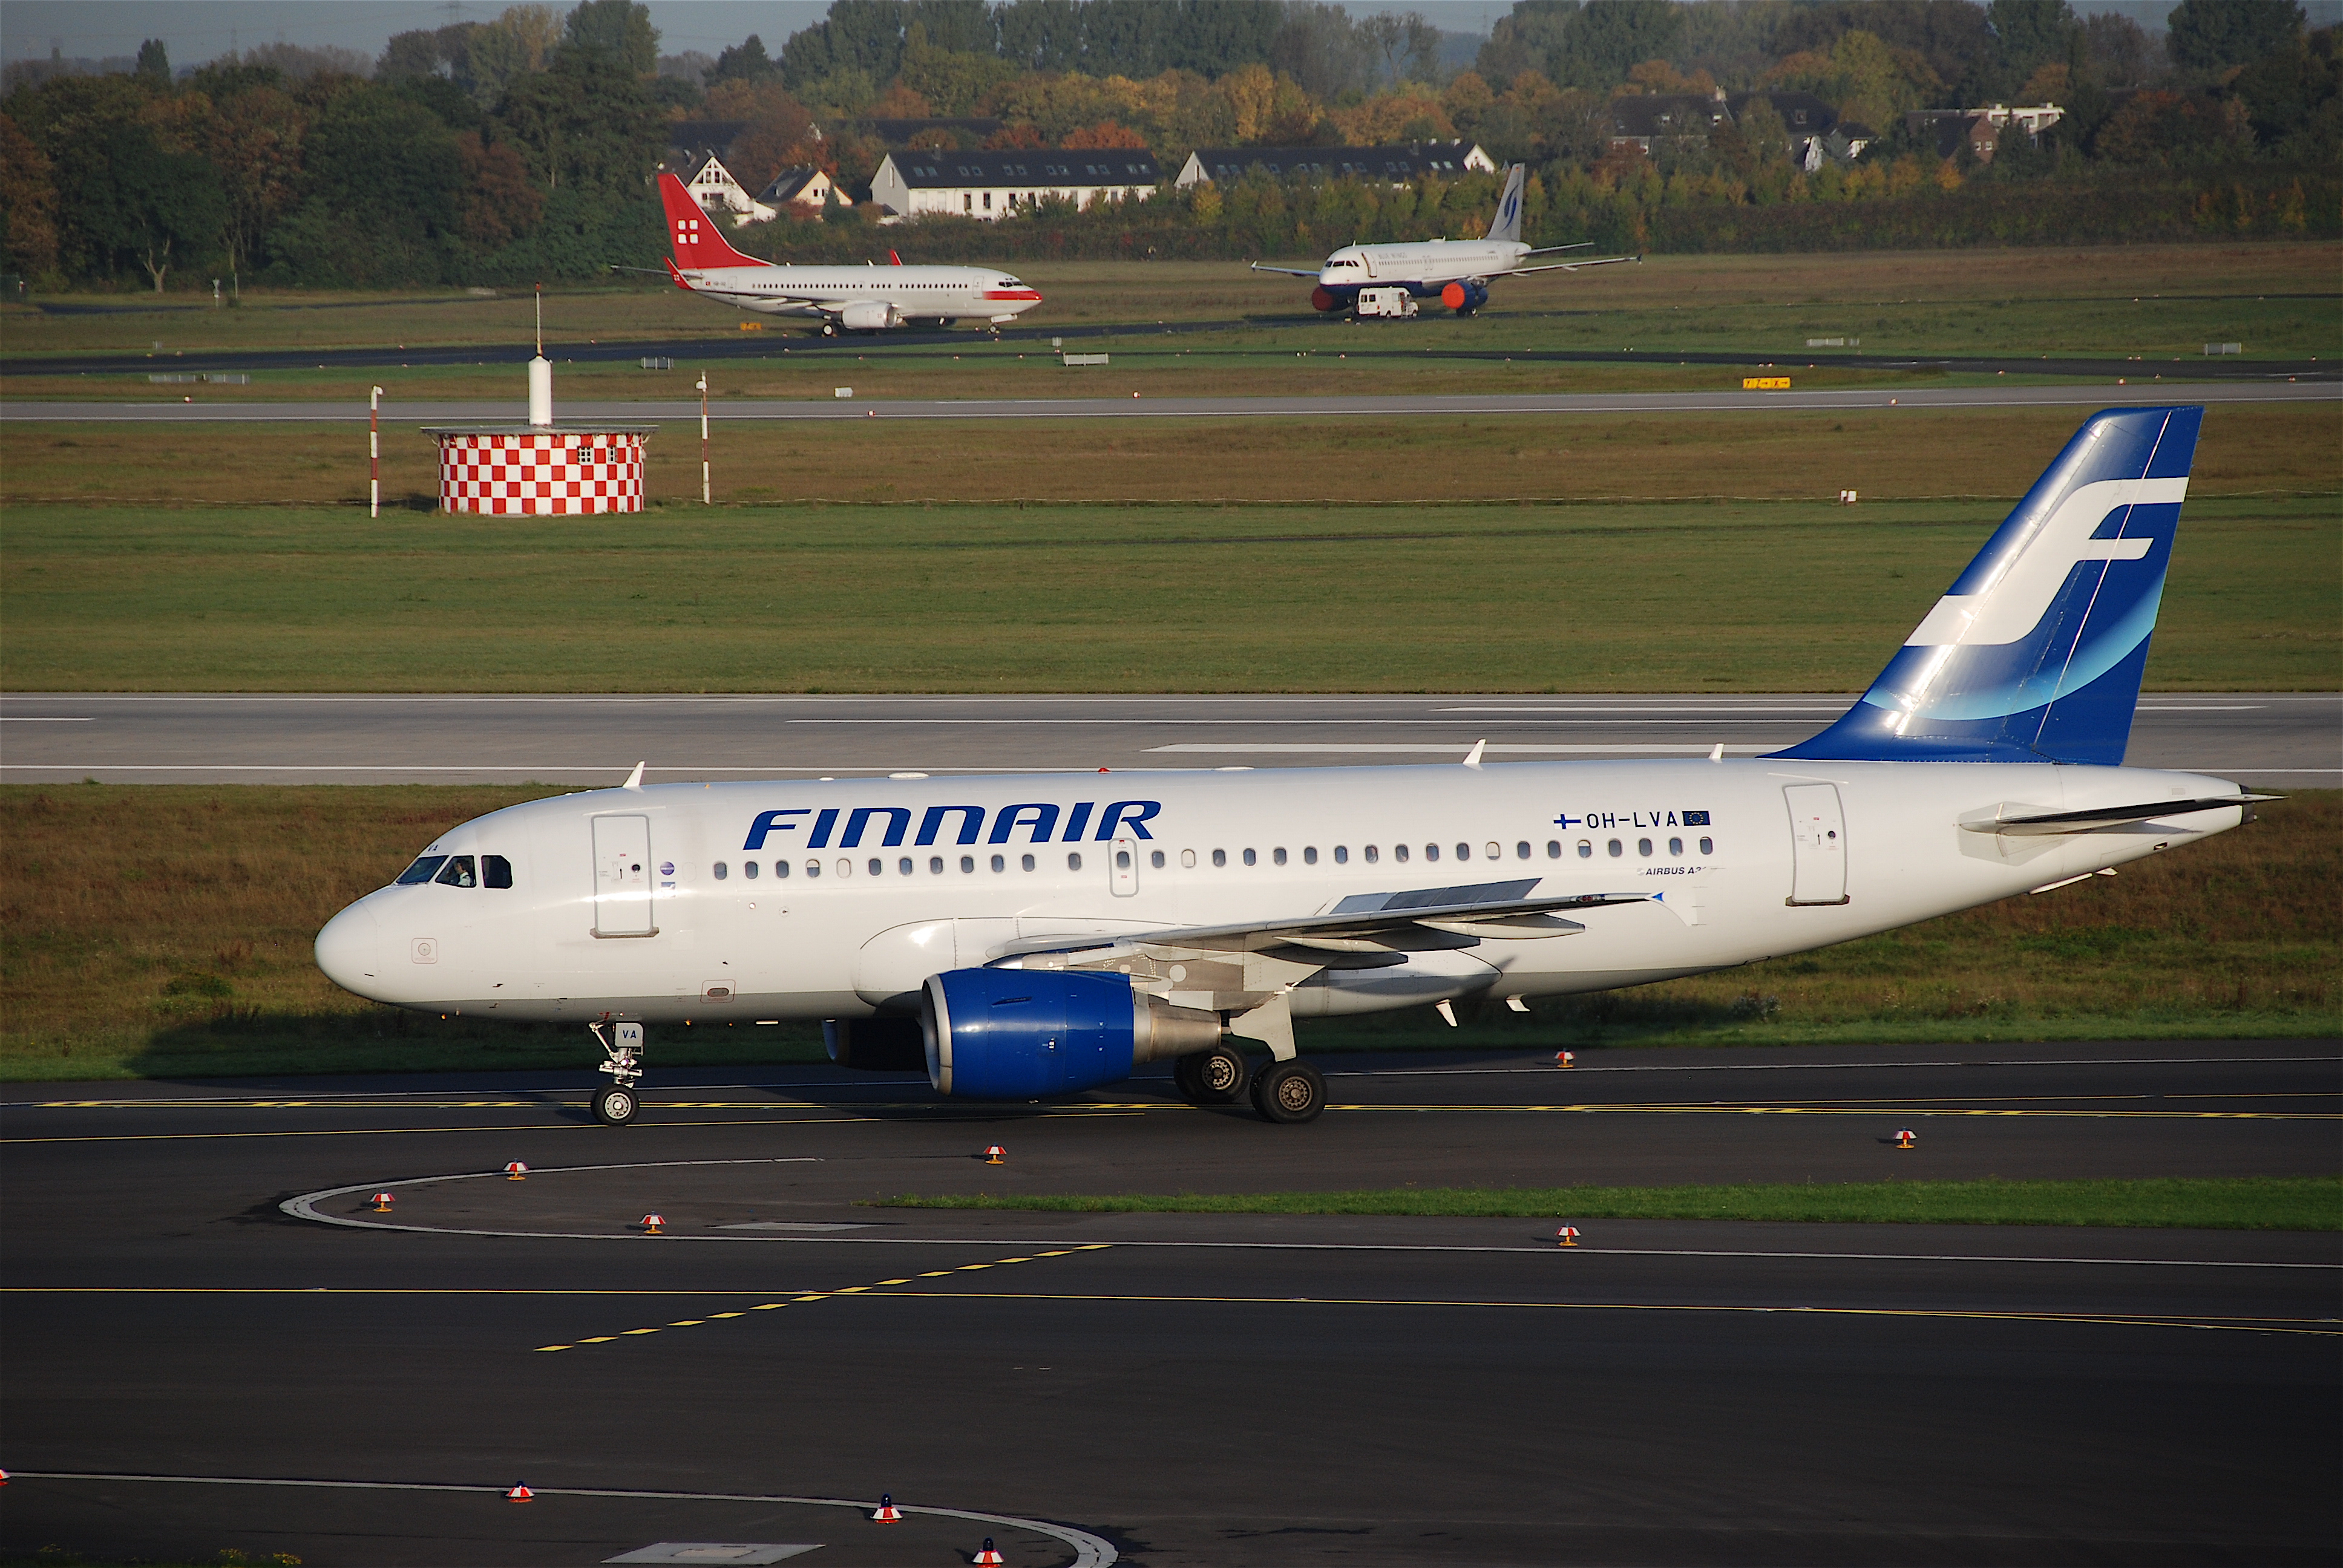 Finnair Airbus A319-112, OH-LVA@DUS,13.10.2009-558ac - Flickr - Aero Icarus